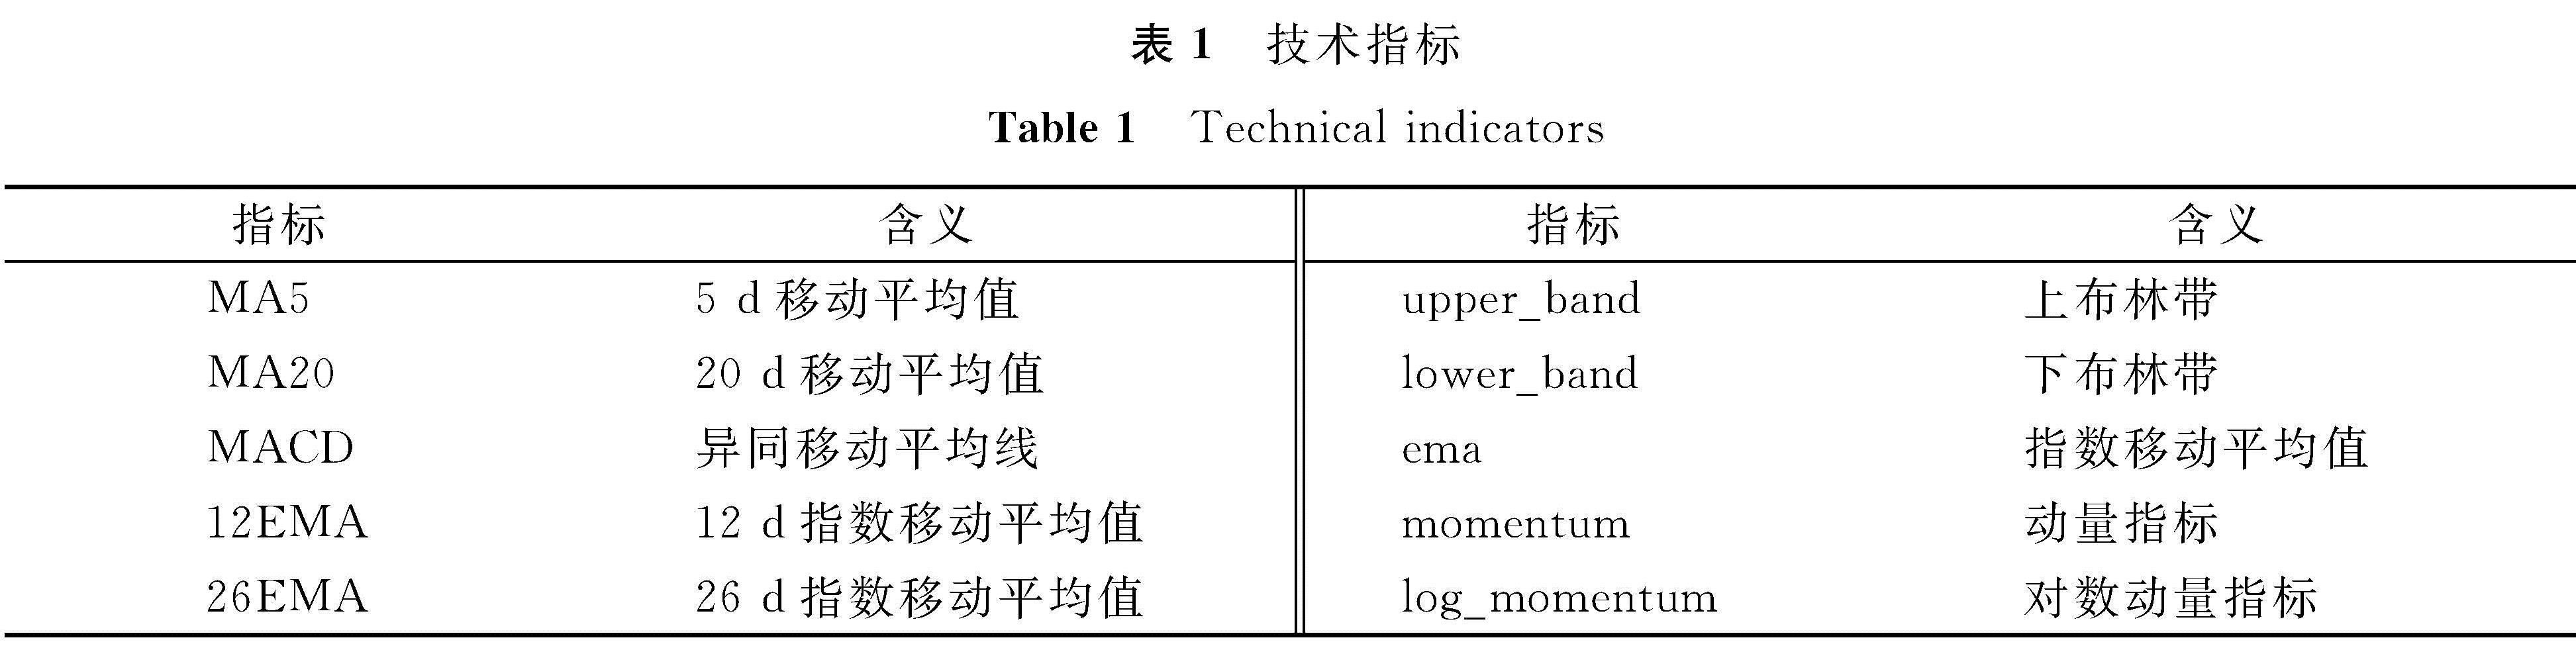 表1 技术指标<br/>Table 1 Technical indicators